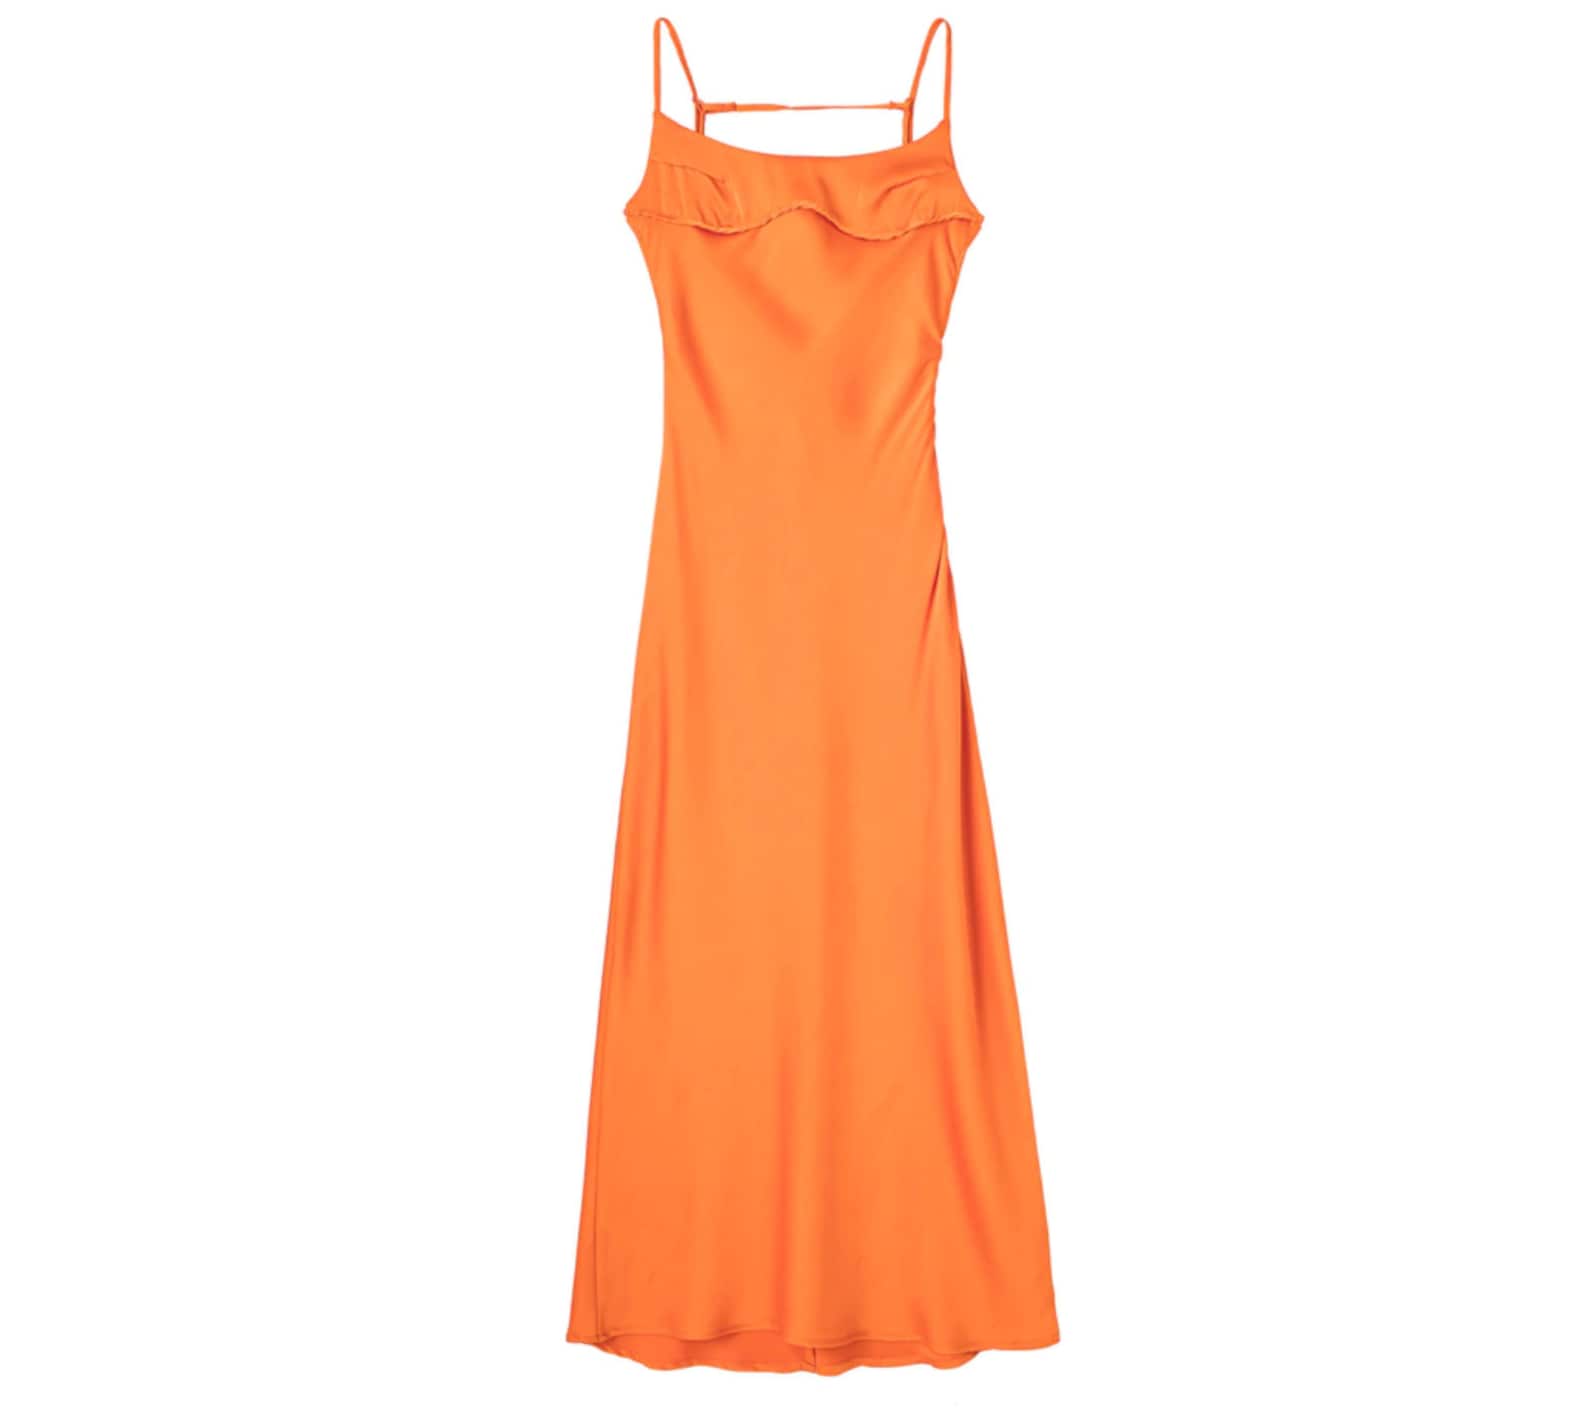 Satin Dress Slip Dress Silky Minimal Long Maxi Formal - Etsy